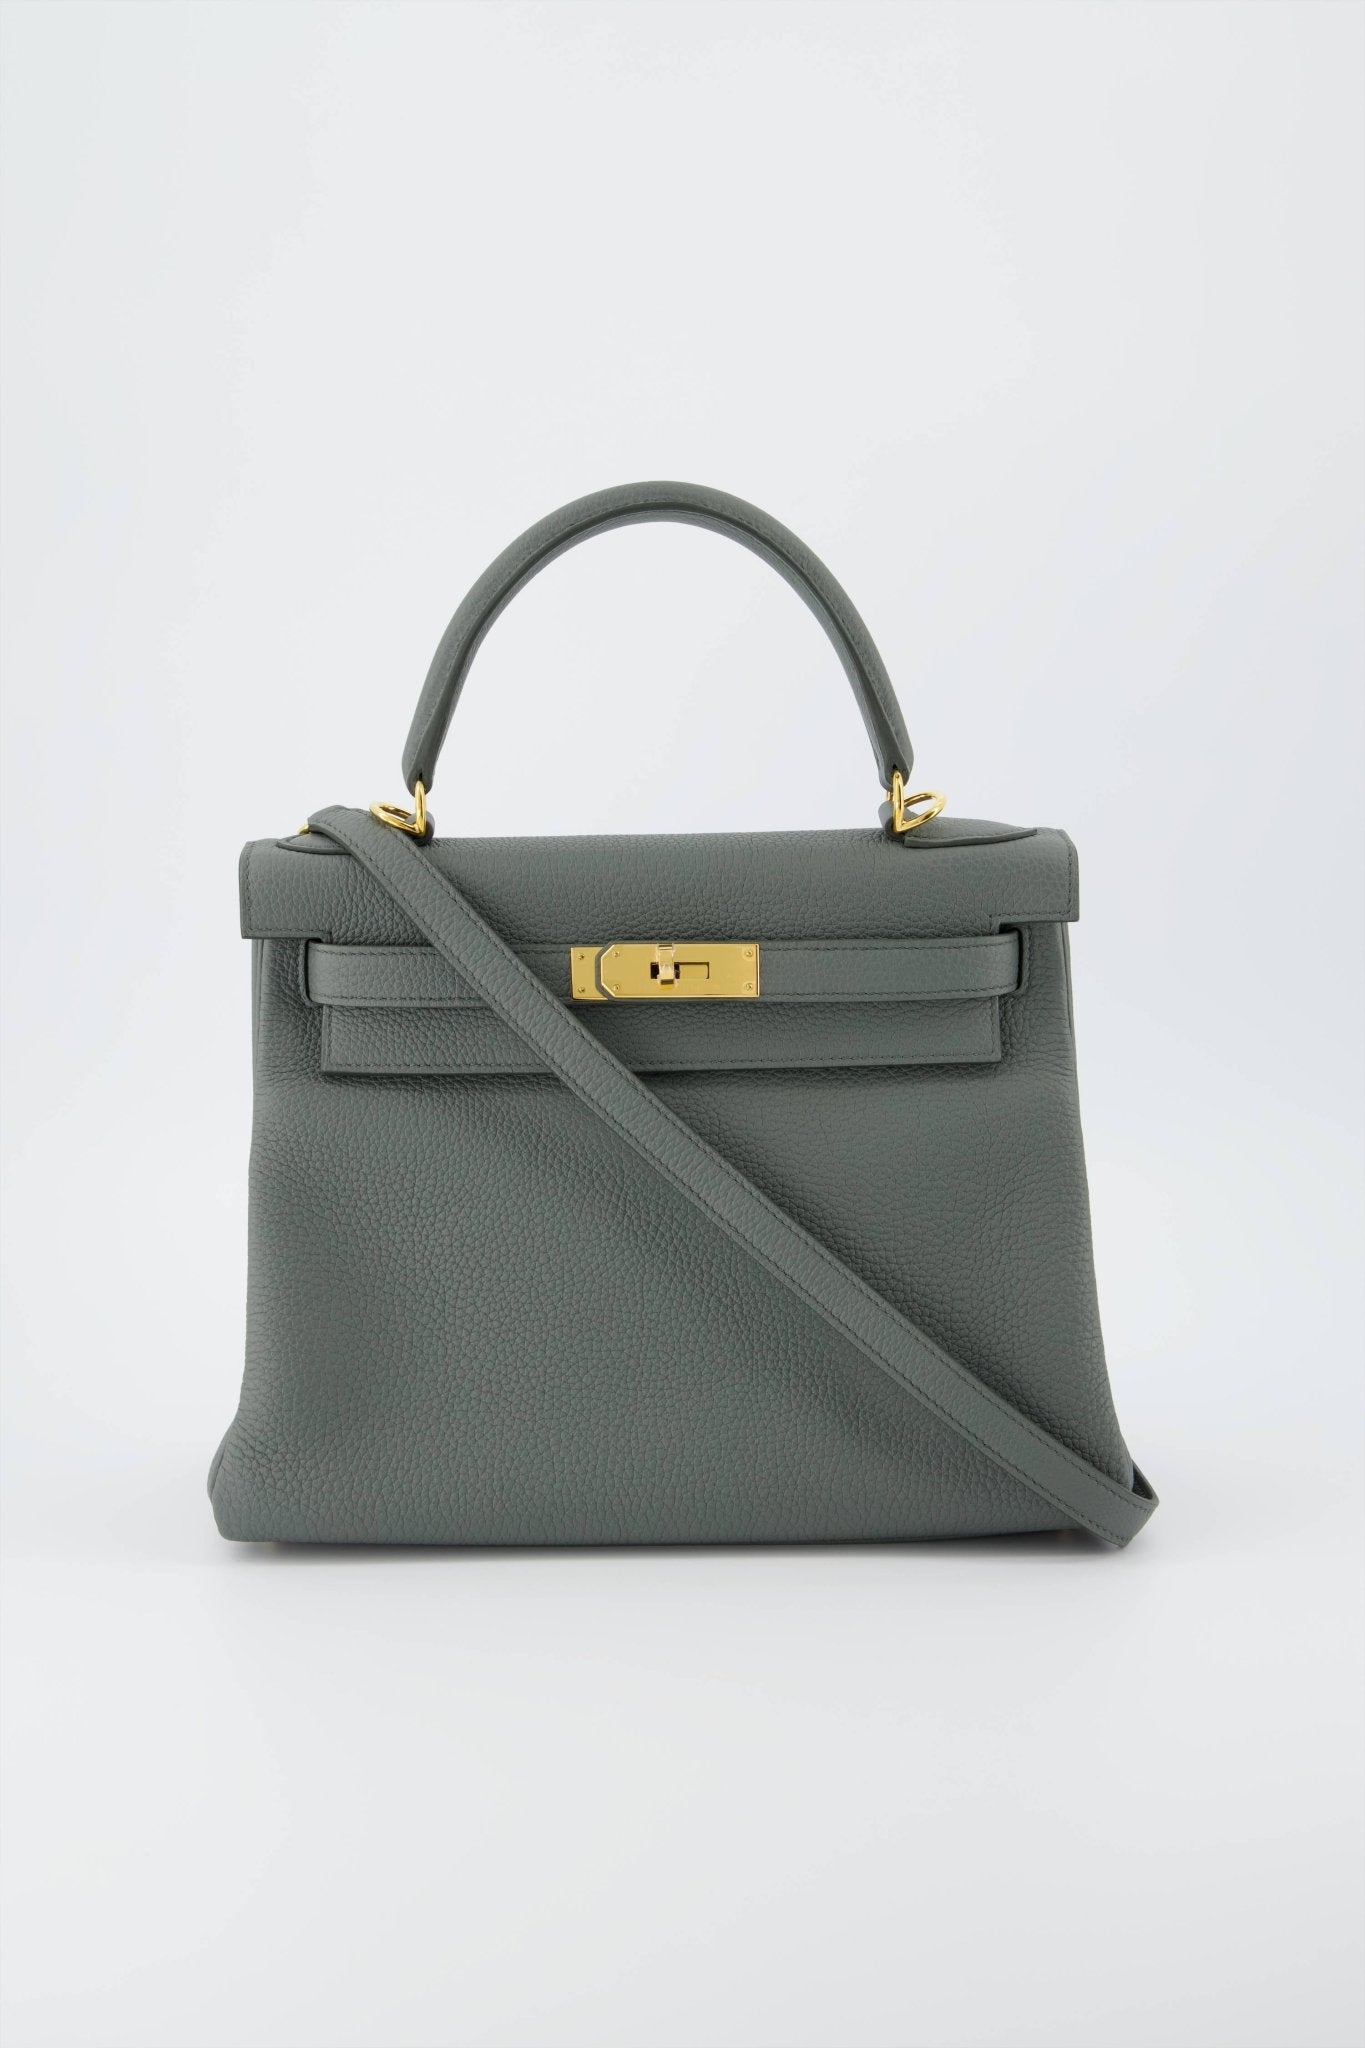 Hermes Kelly 28 Returnee Handbag Vert Amande Togo Leather With Gold Hardware